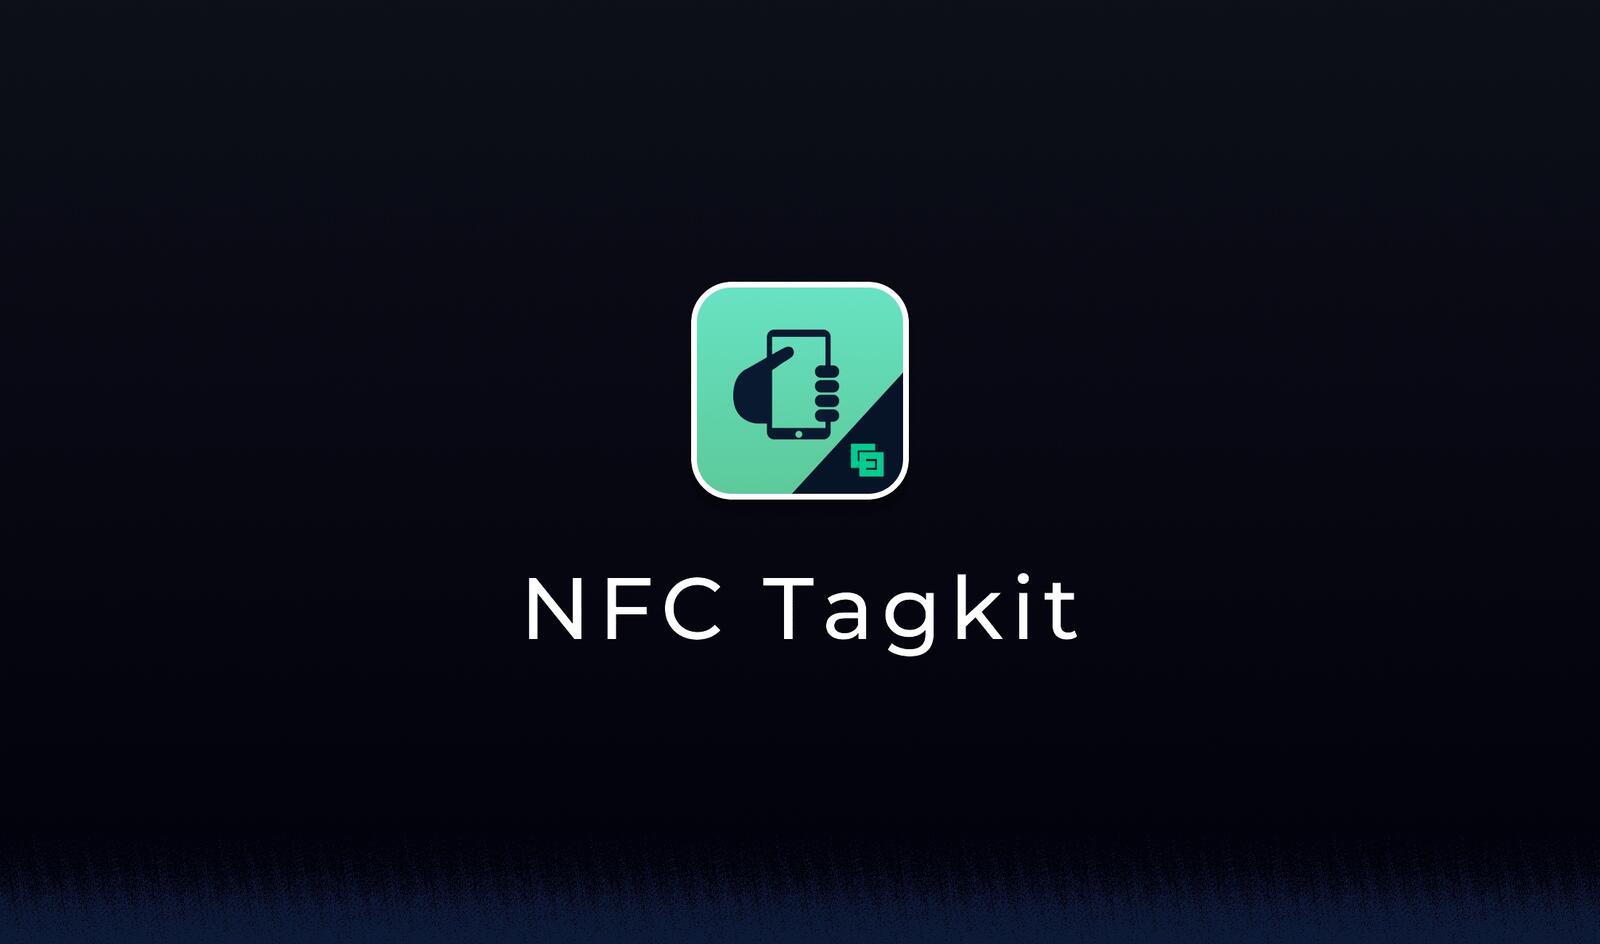 Die NFC Tagkit-App von Corewillsoft zeigt, wie einfach es ist, hochsichere und hochtechnologische Karten von Mifare Desfire zusammen mit einem Mobiltelefon zu verwenden.